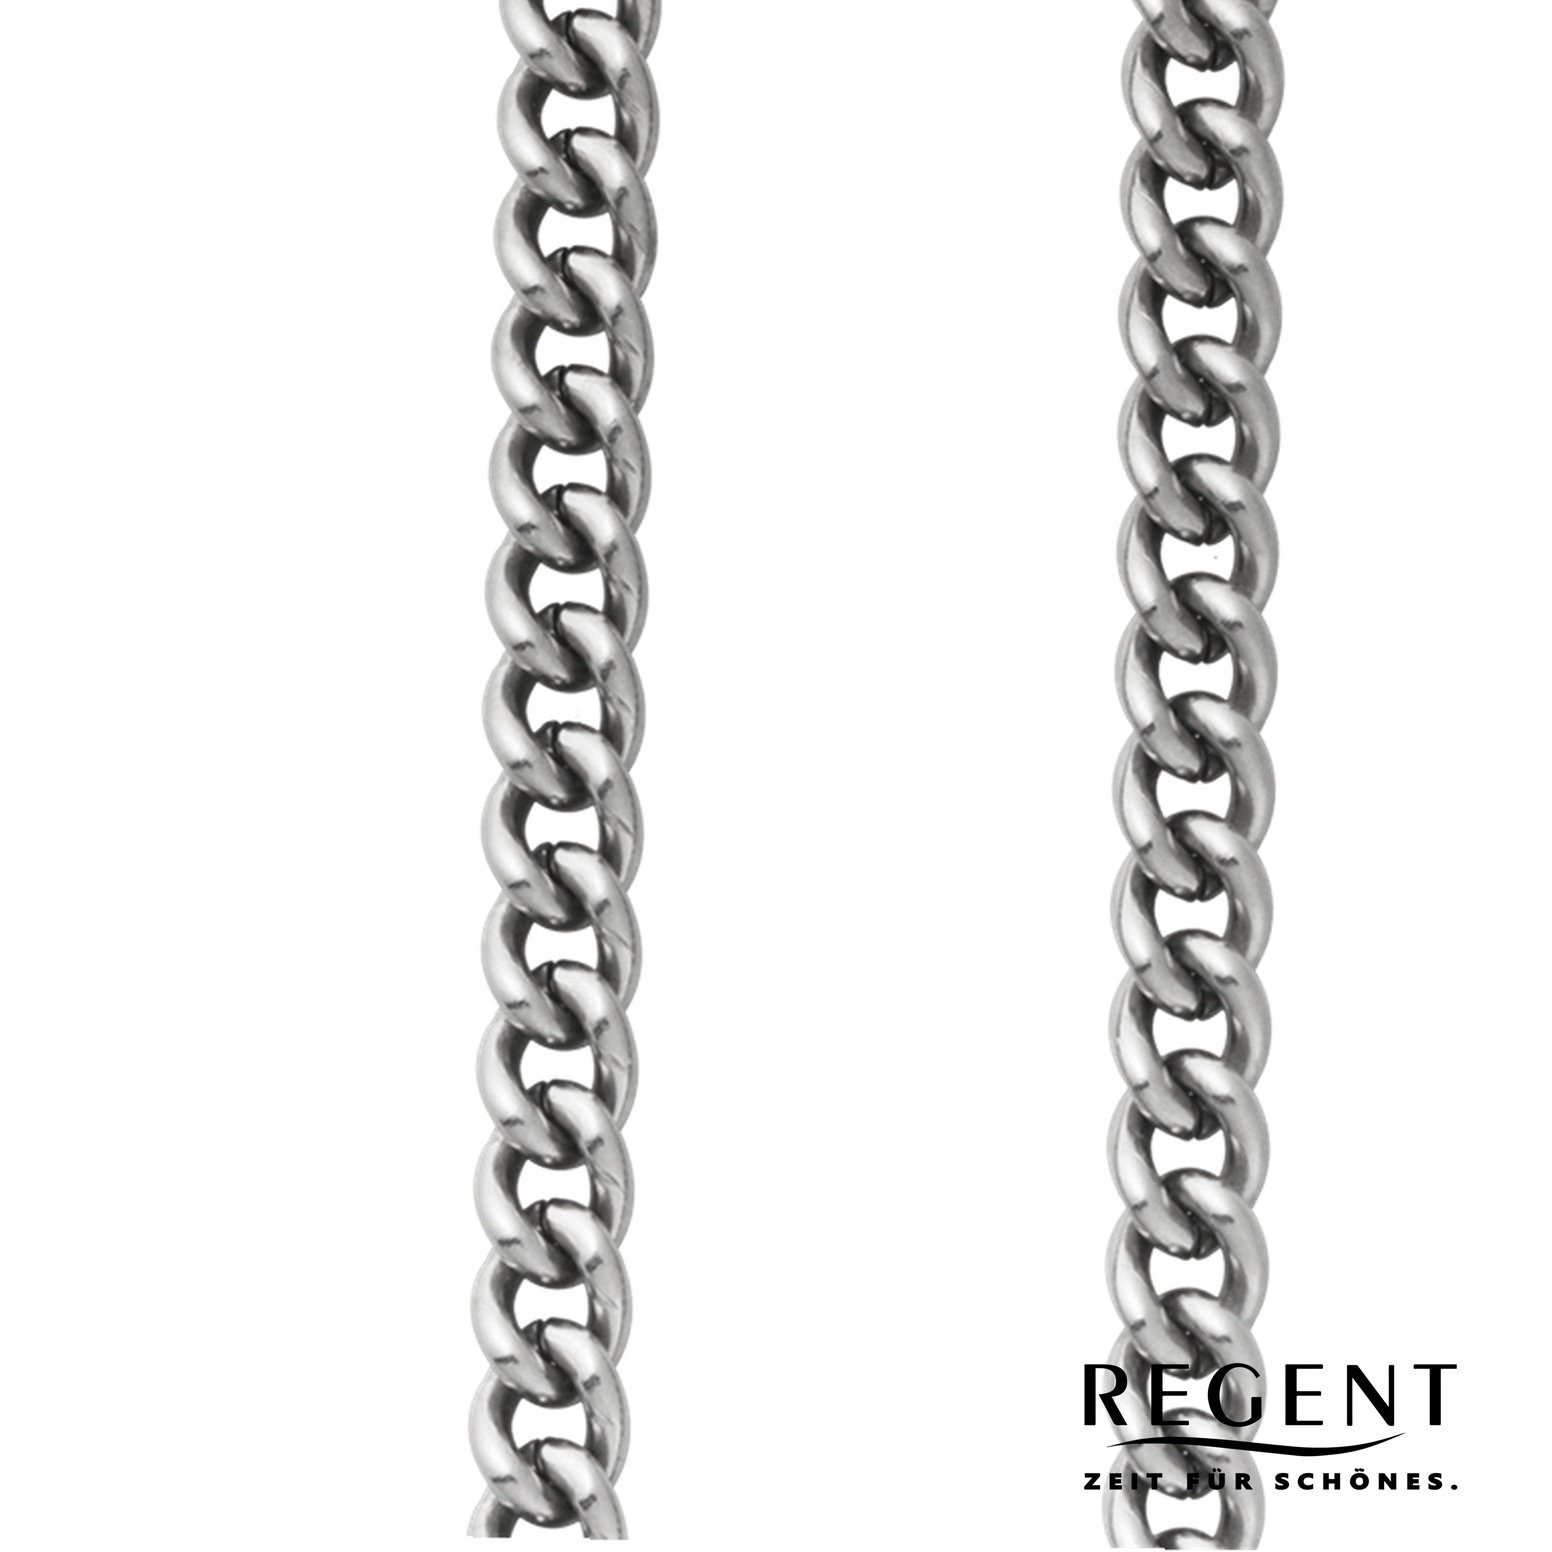 Taschenuhren-Kette Regent Taschenuhrenkette, Regent 5mm P-50, Kettenuhr Herren Elegant